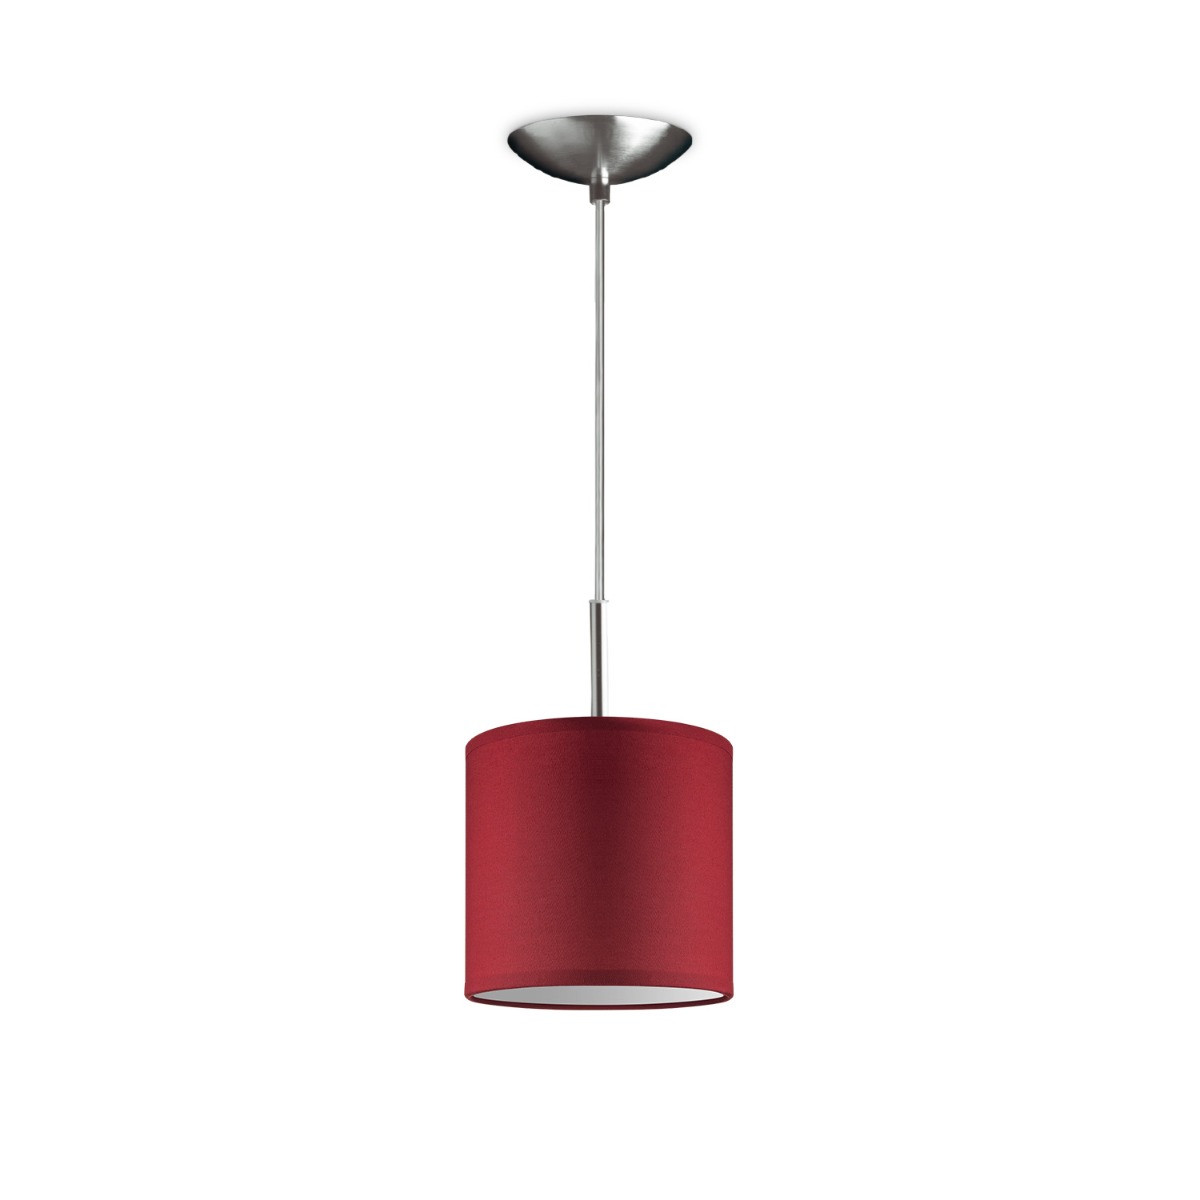 Light depot - hanglamp tube deluxe bling Ø 16 cm - rood - Outlet